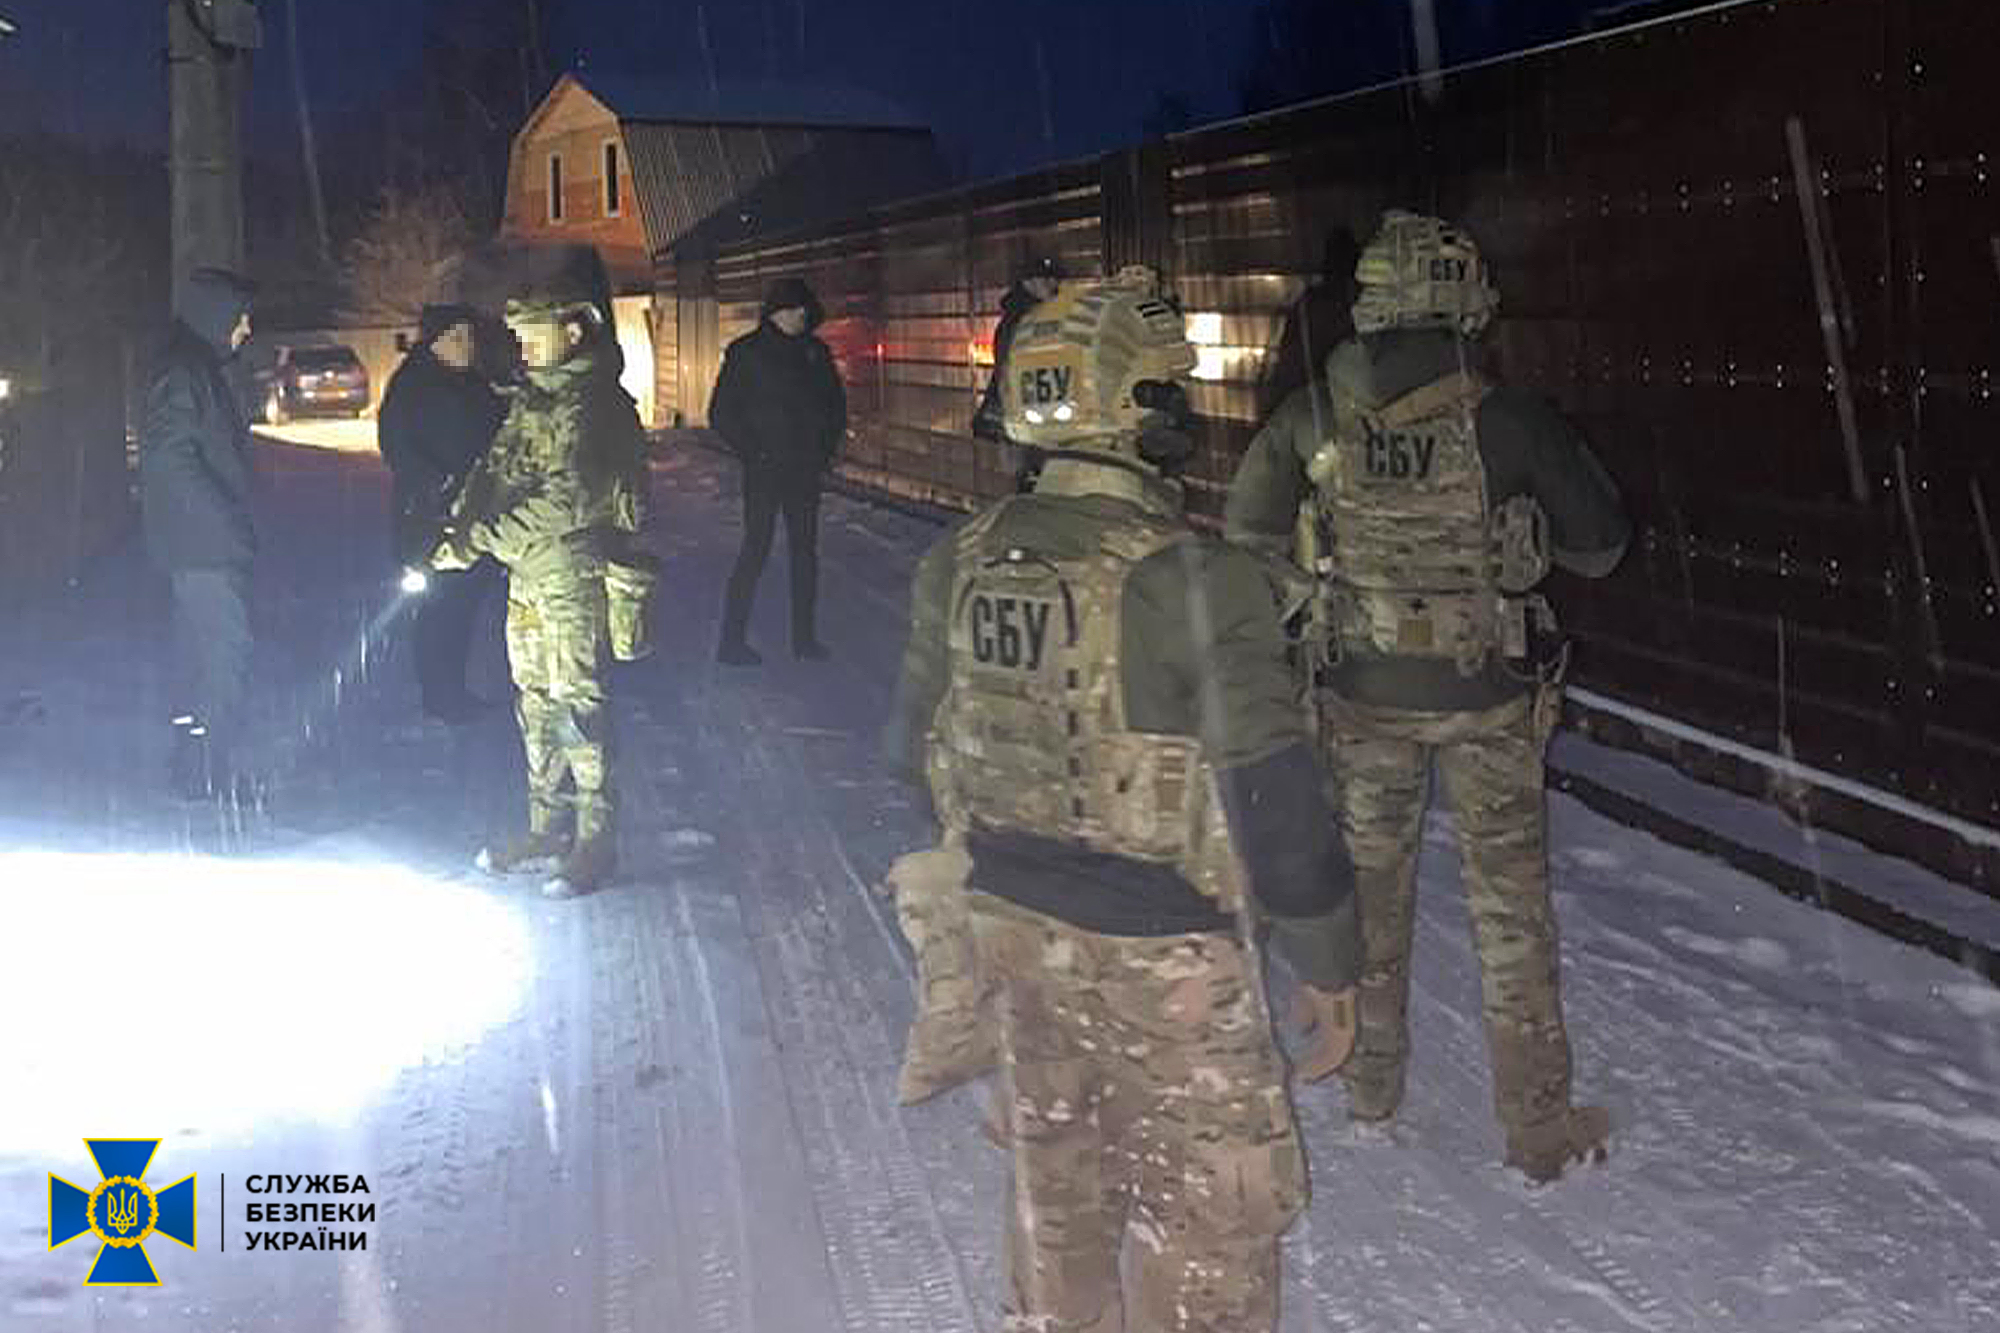 Прикарпатська СБУ від початку повномасштабного затримала 17 осіб за агітацію на підтримку російського вторгнення